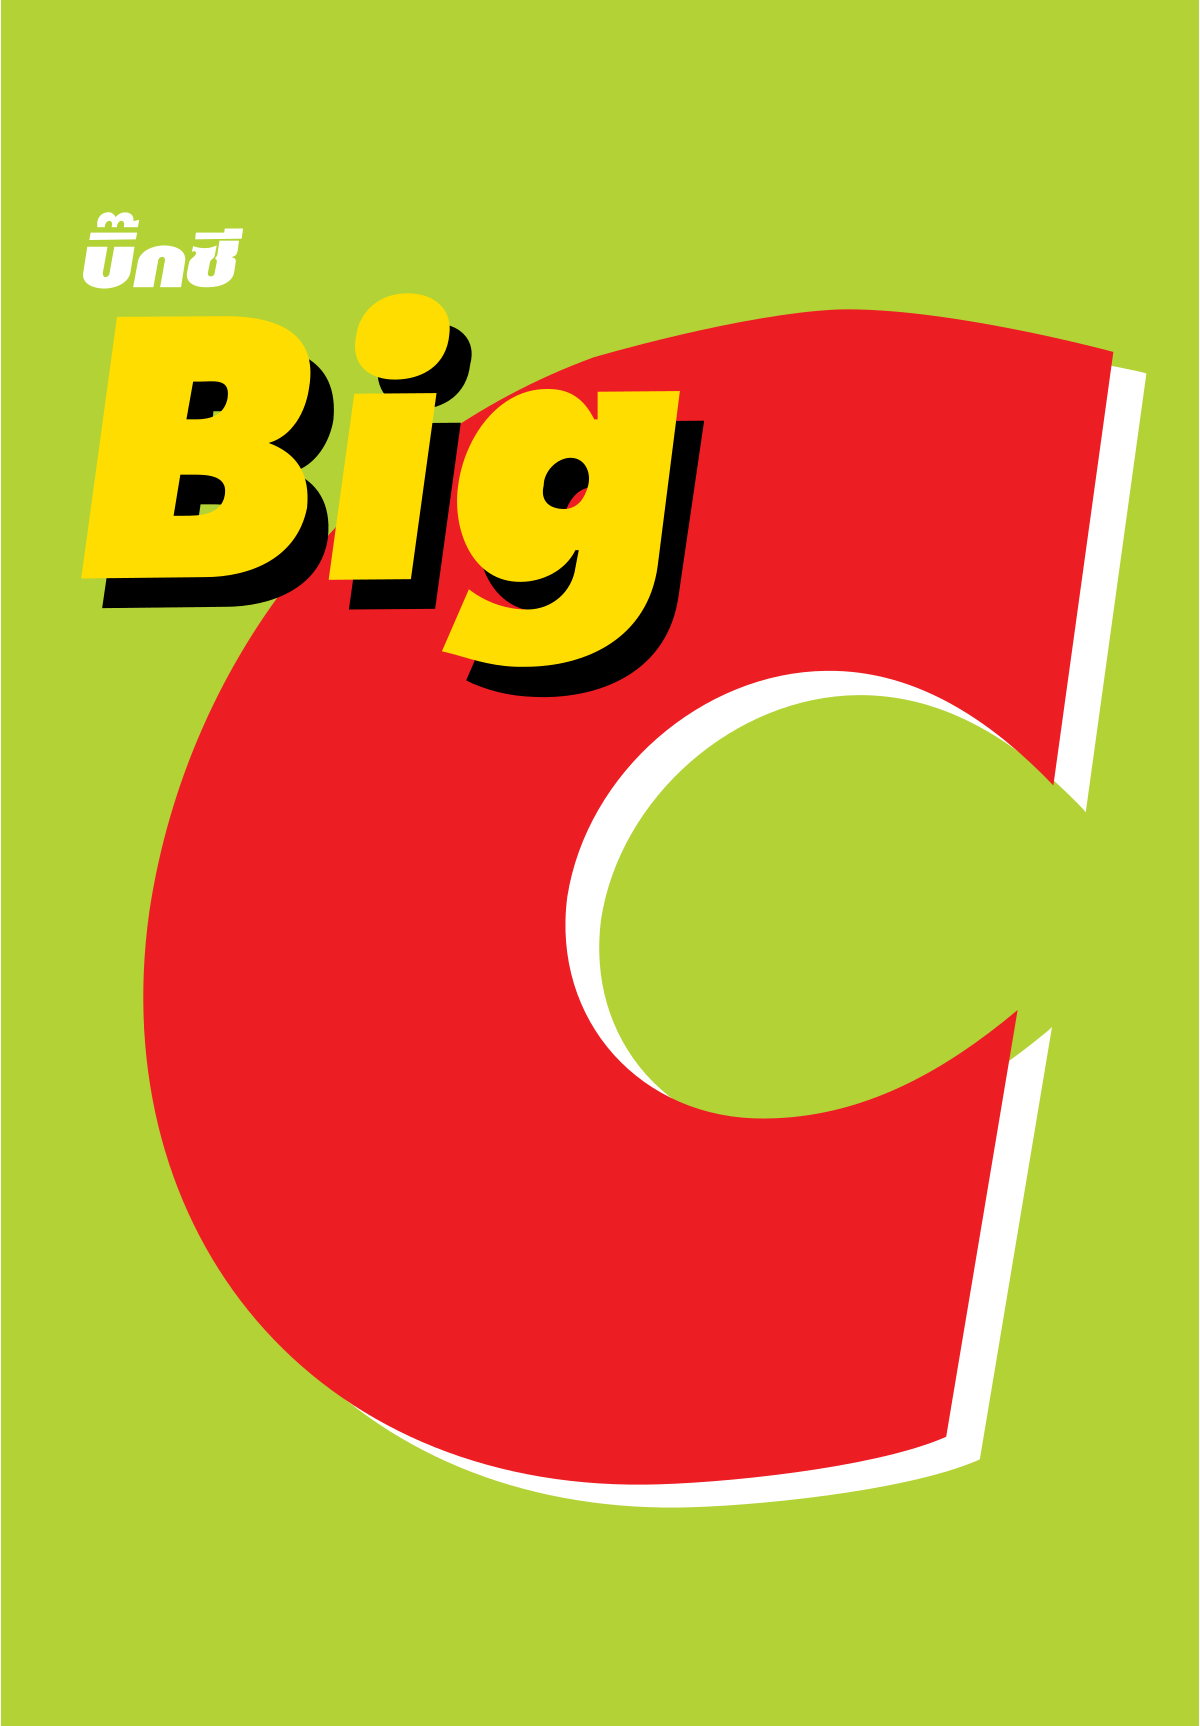 Super C Logo - Big C